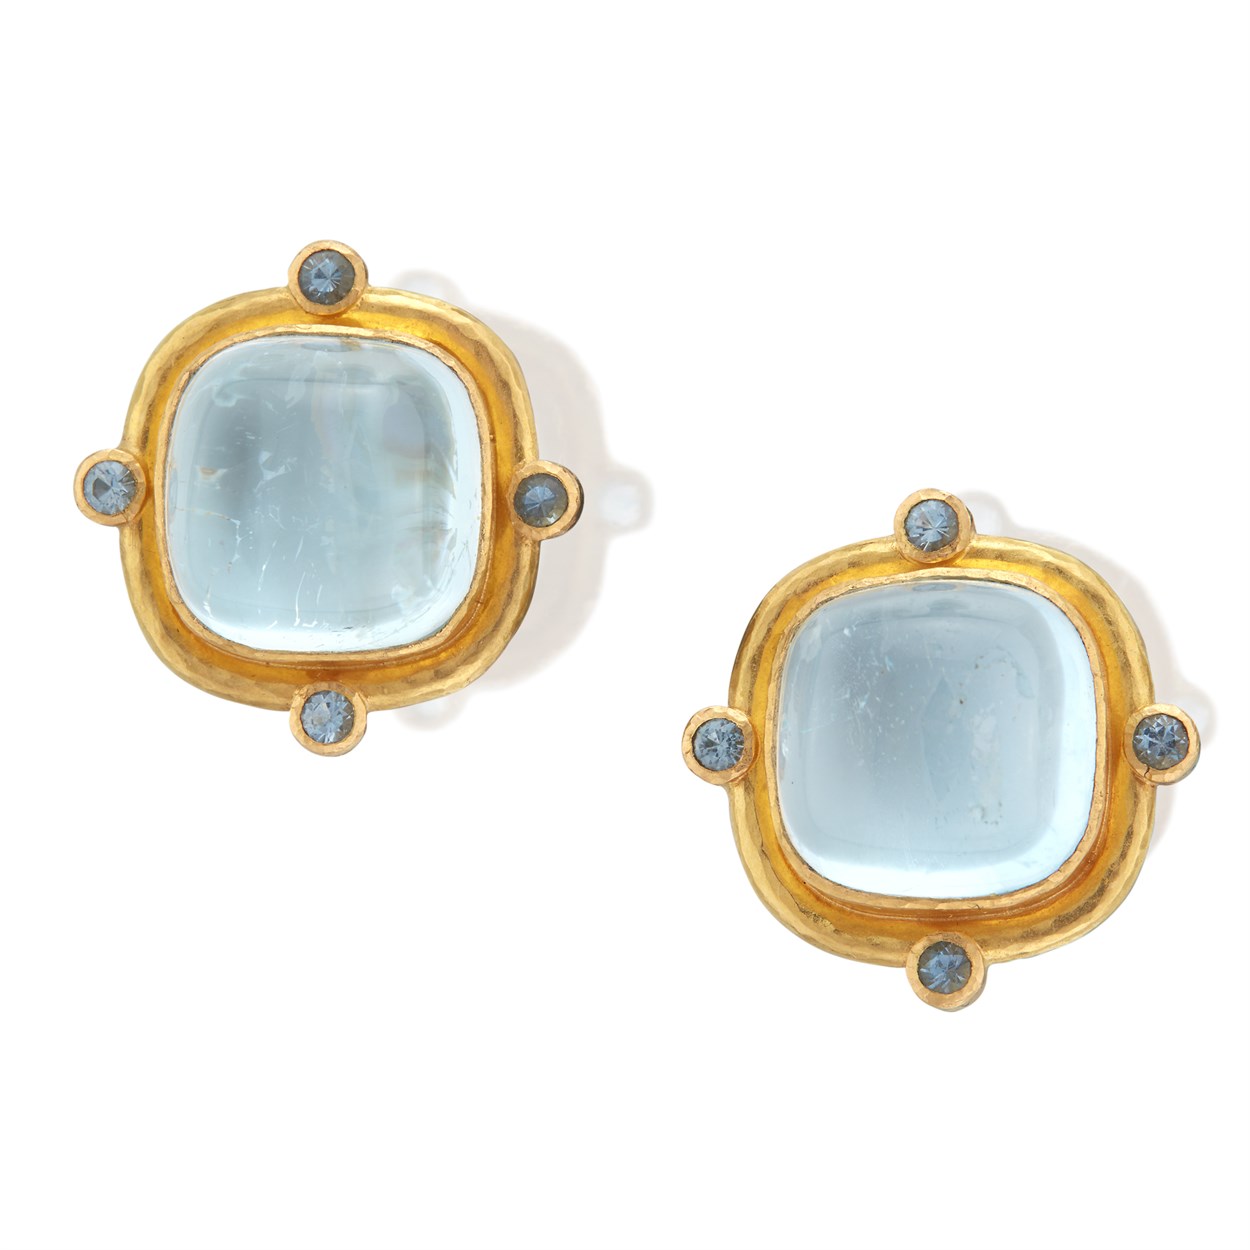 Lot 32 - A pair of blue topaz and nineteen karat gold earrings, Elizabeth Locke